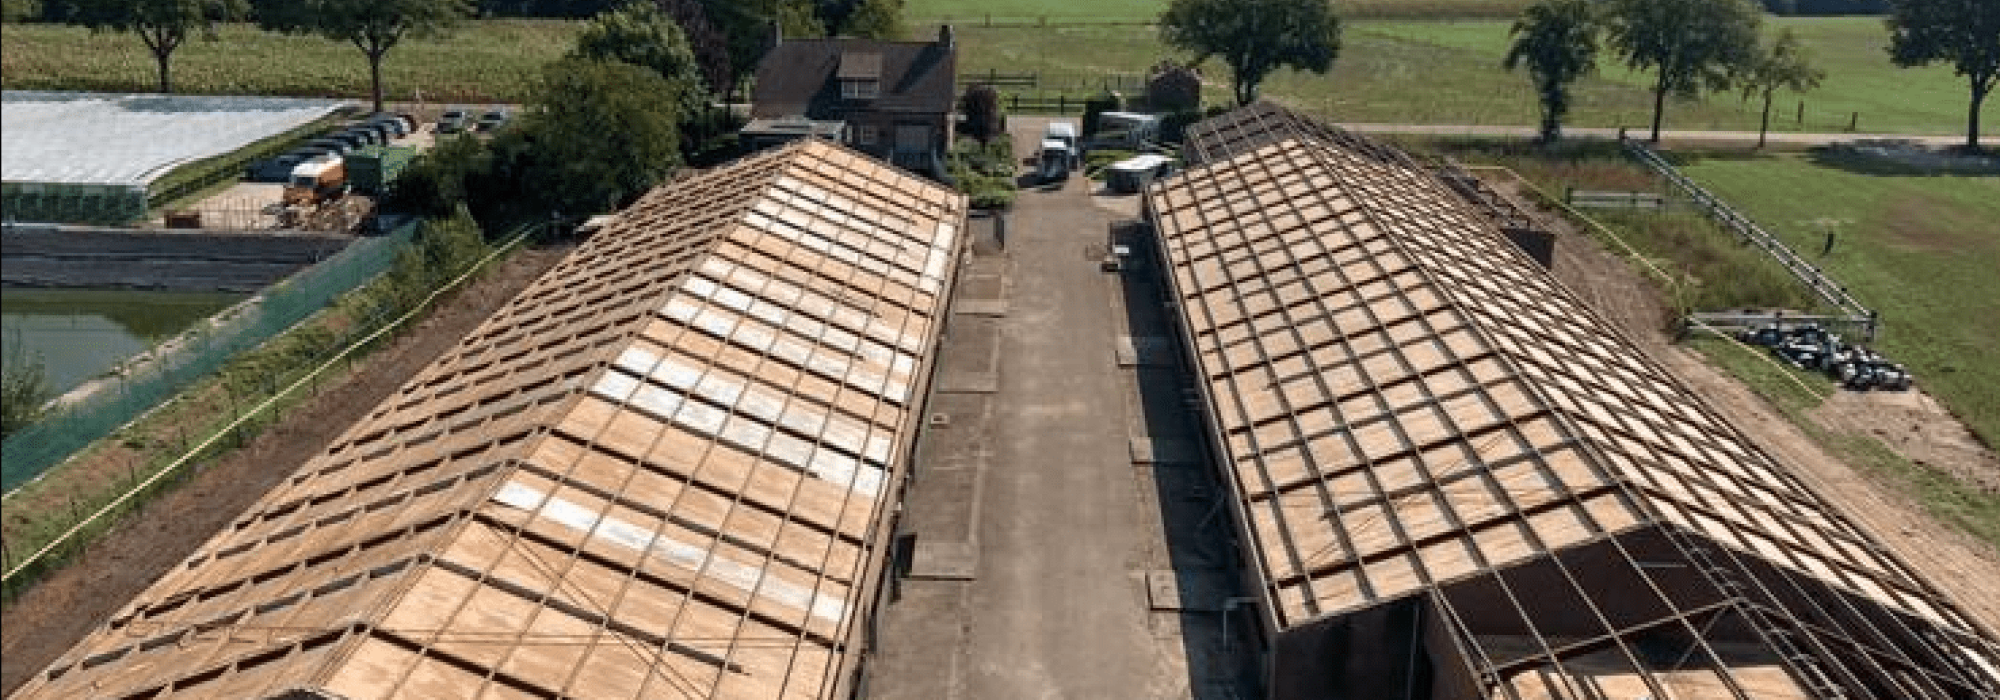 asbest dak verwijderen echel